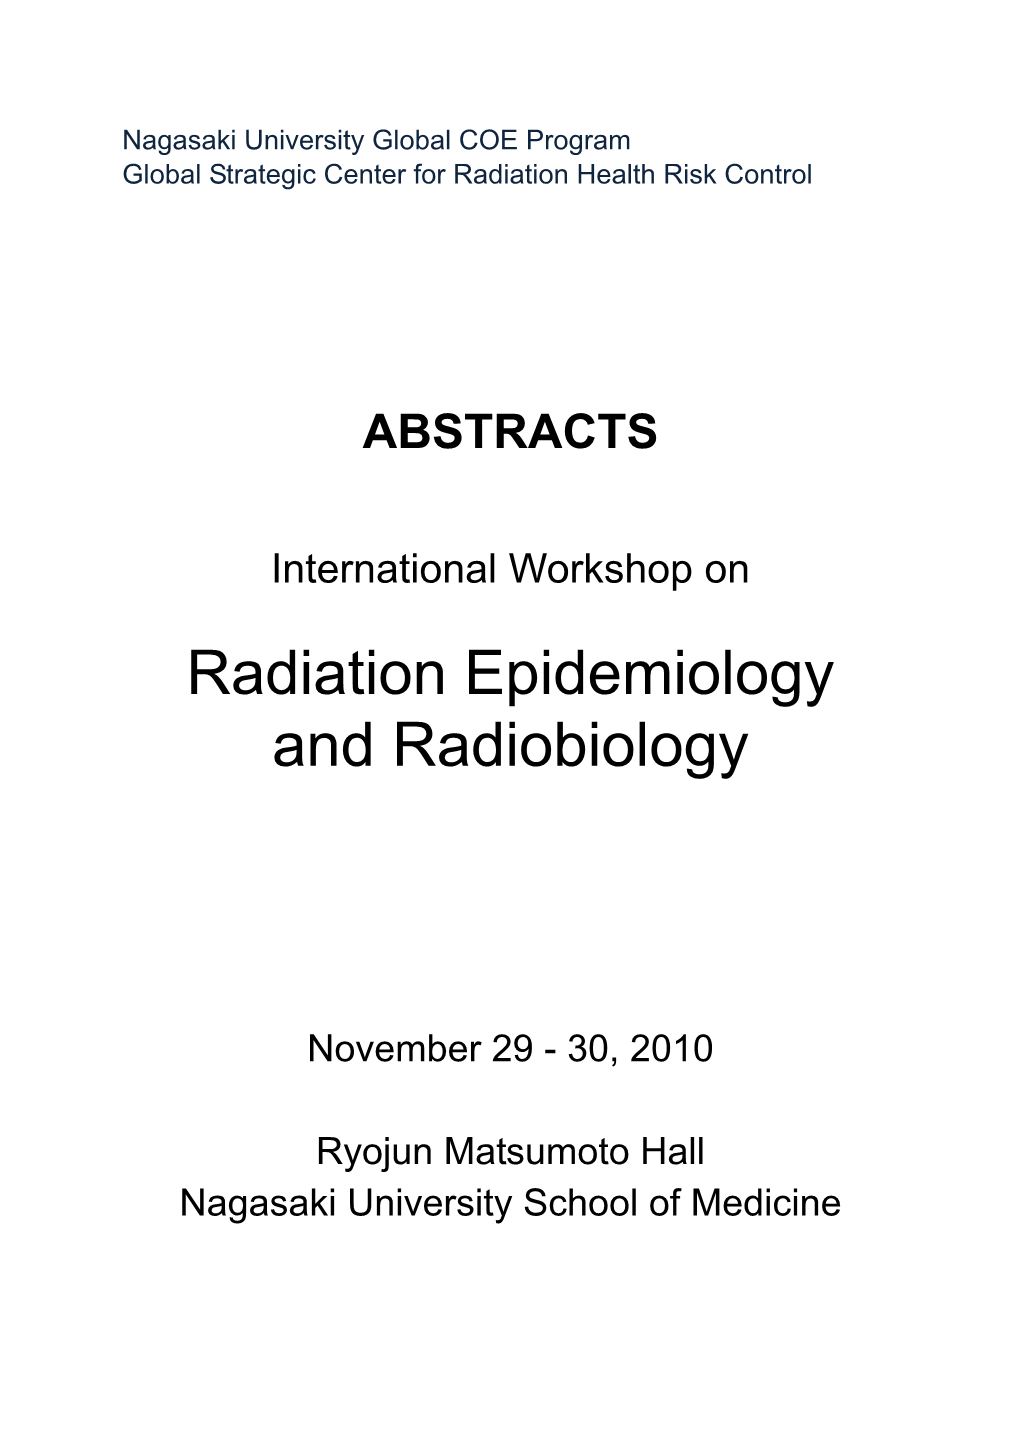 Radiation Epidemiology and Radiobiology